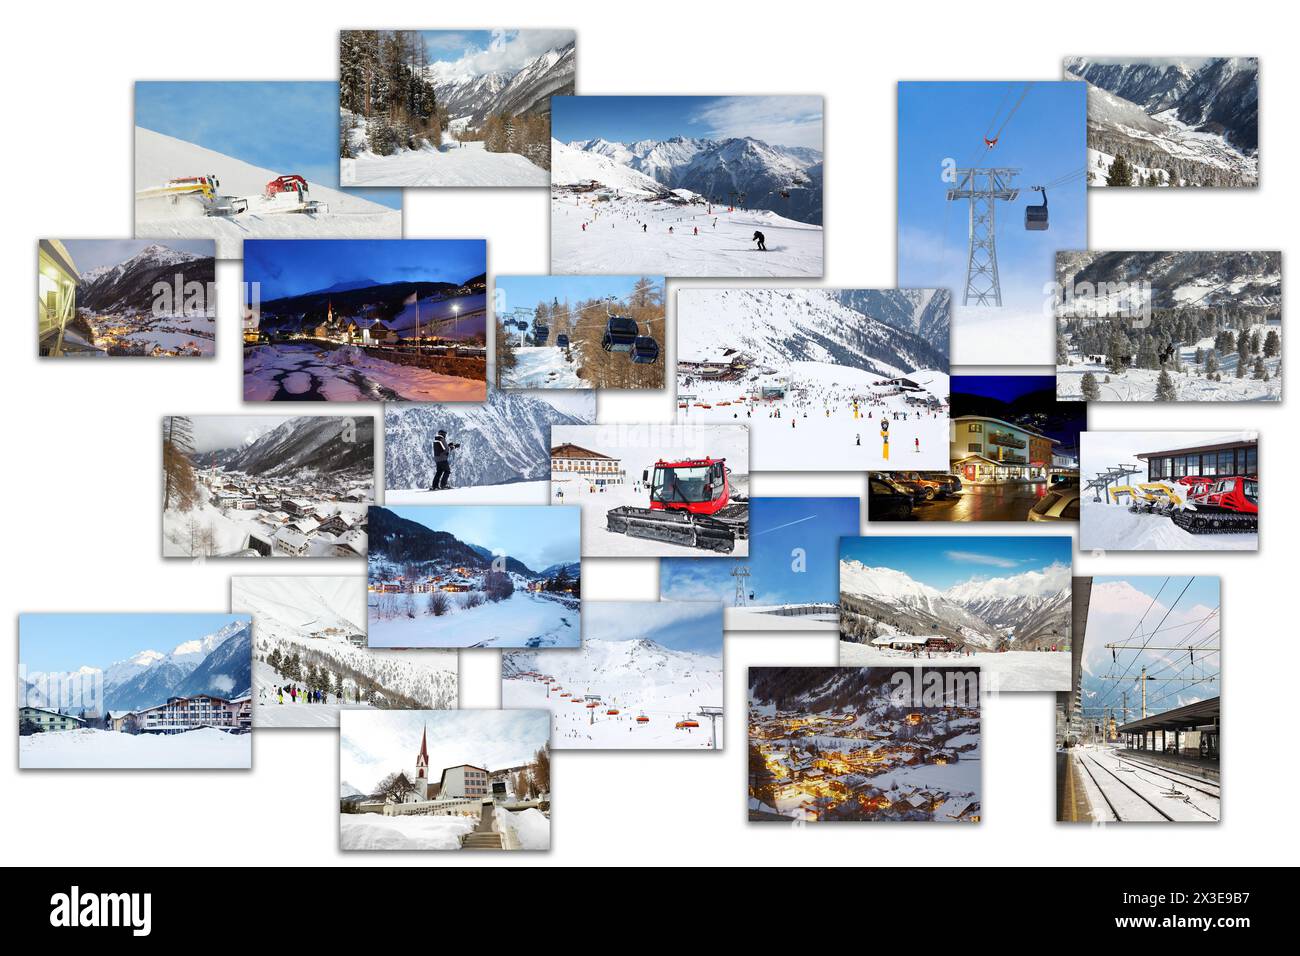 Collage mit alpinem Blick auf das Skigebiet Solden, Österreich - Standseilbahn, Skifahrer, Hütten Stockfoto